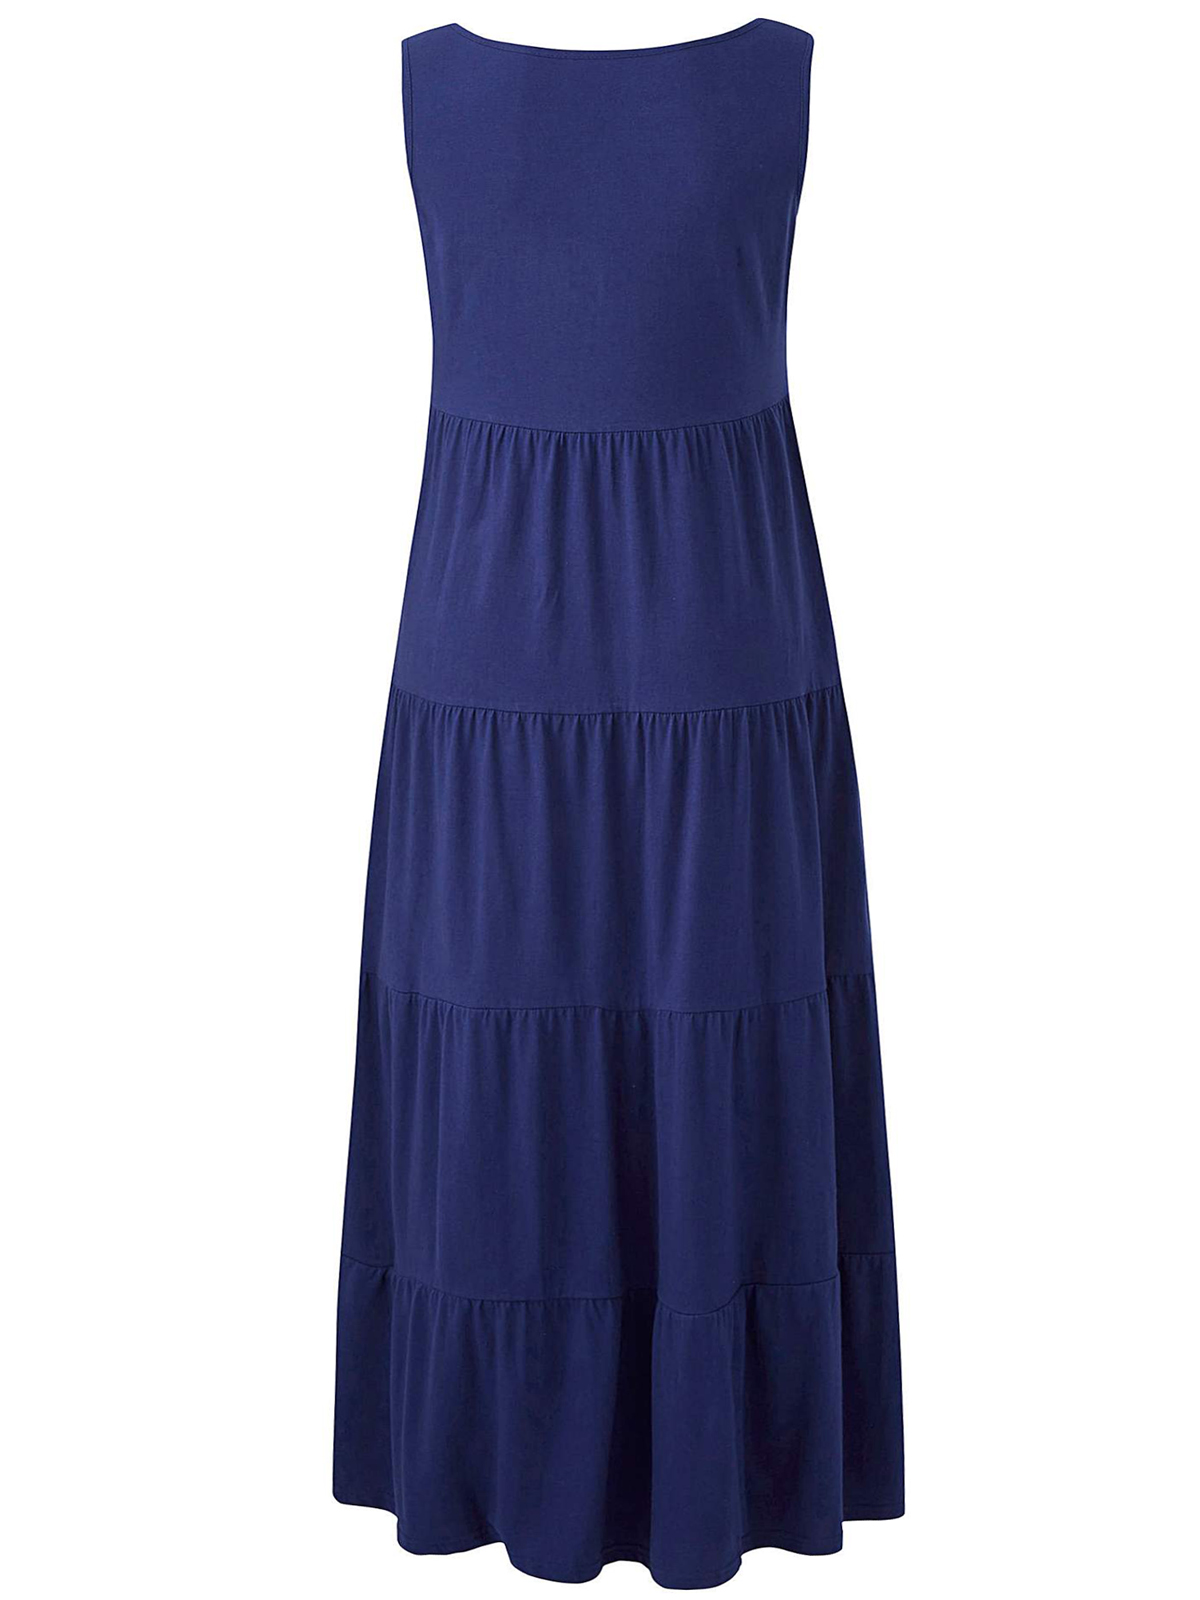 Julipa - - Julipa NAVY Pure Cotton Tiered Jersey Maxi Dress - Plus Size ...